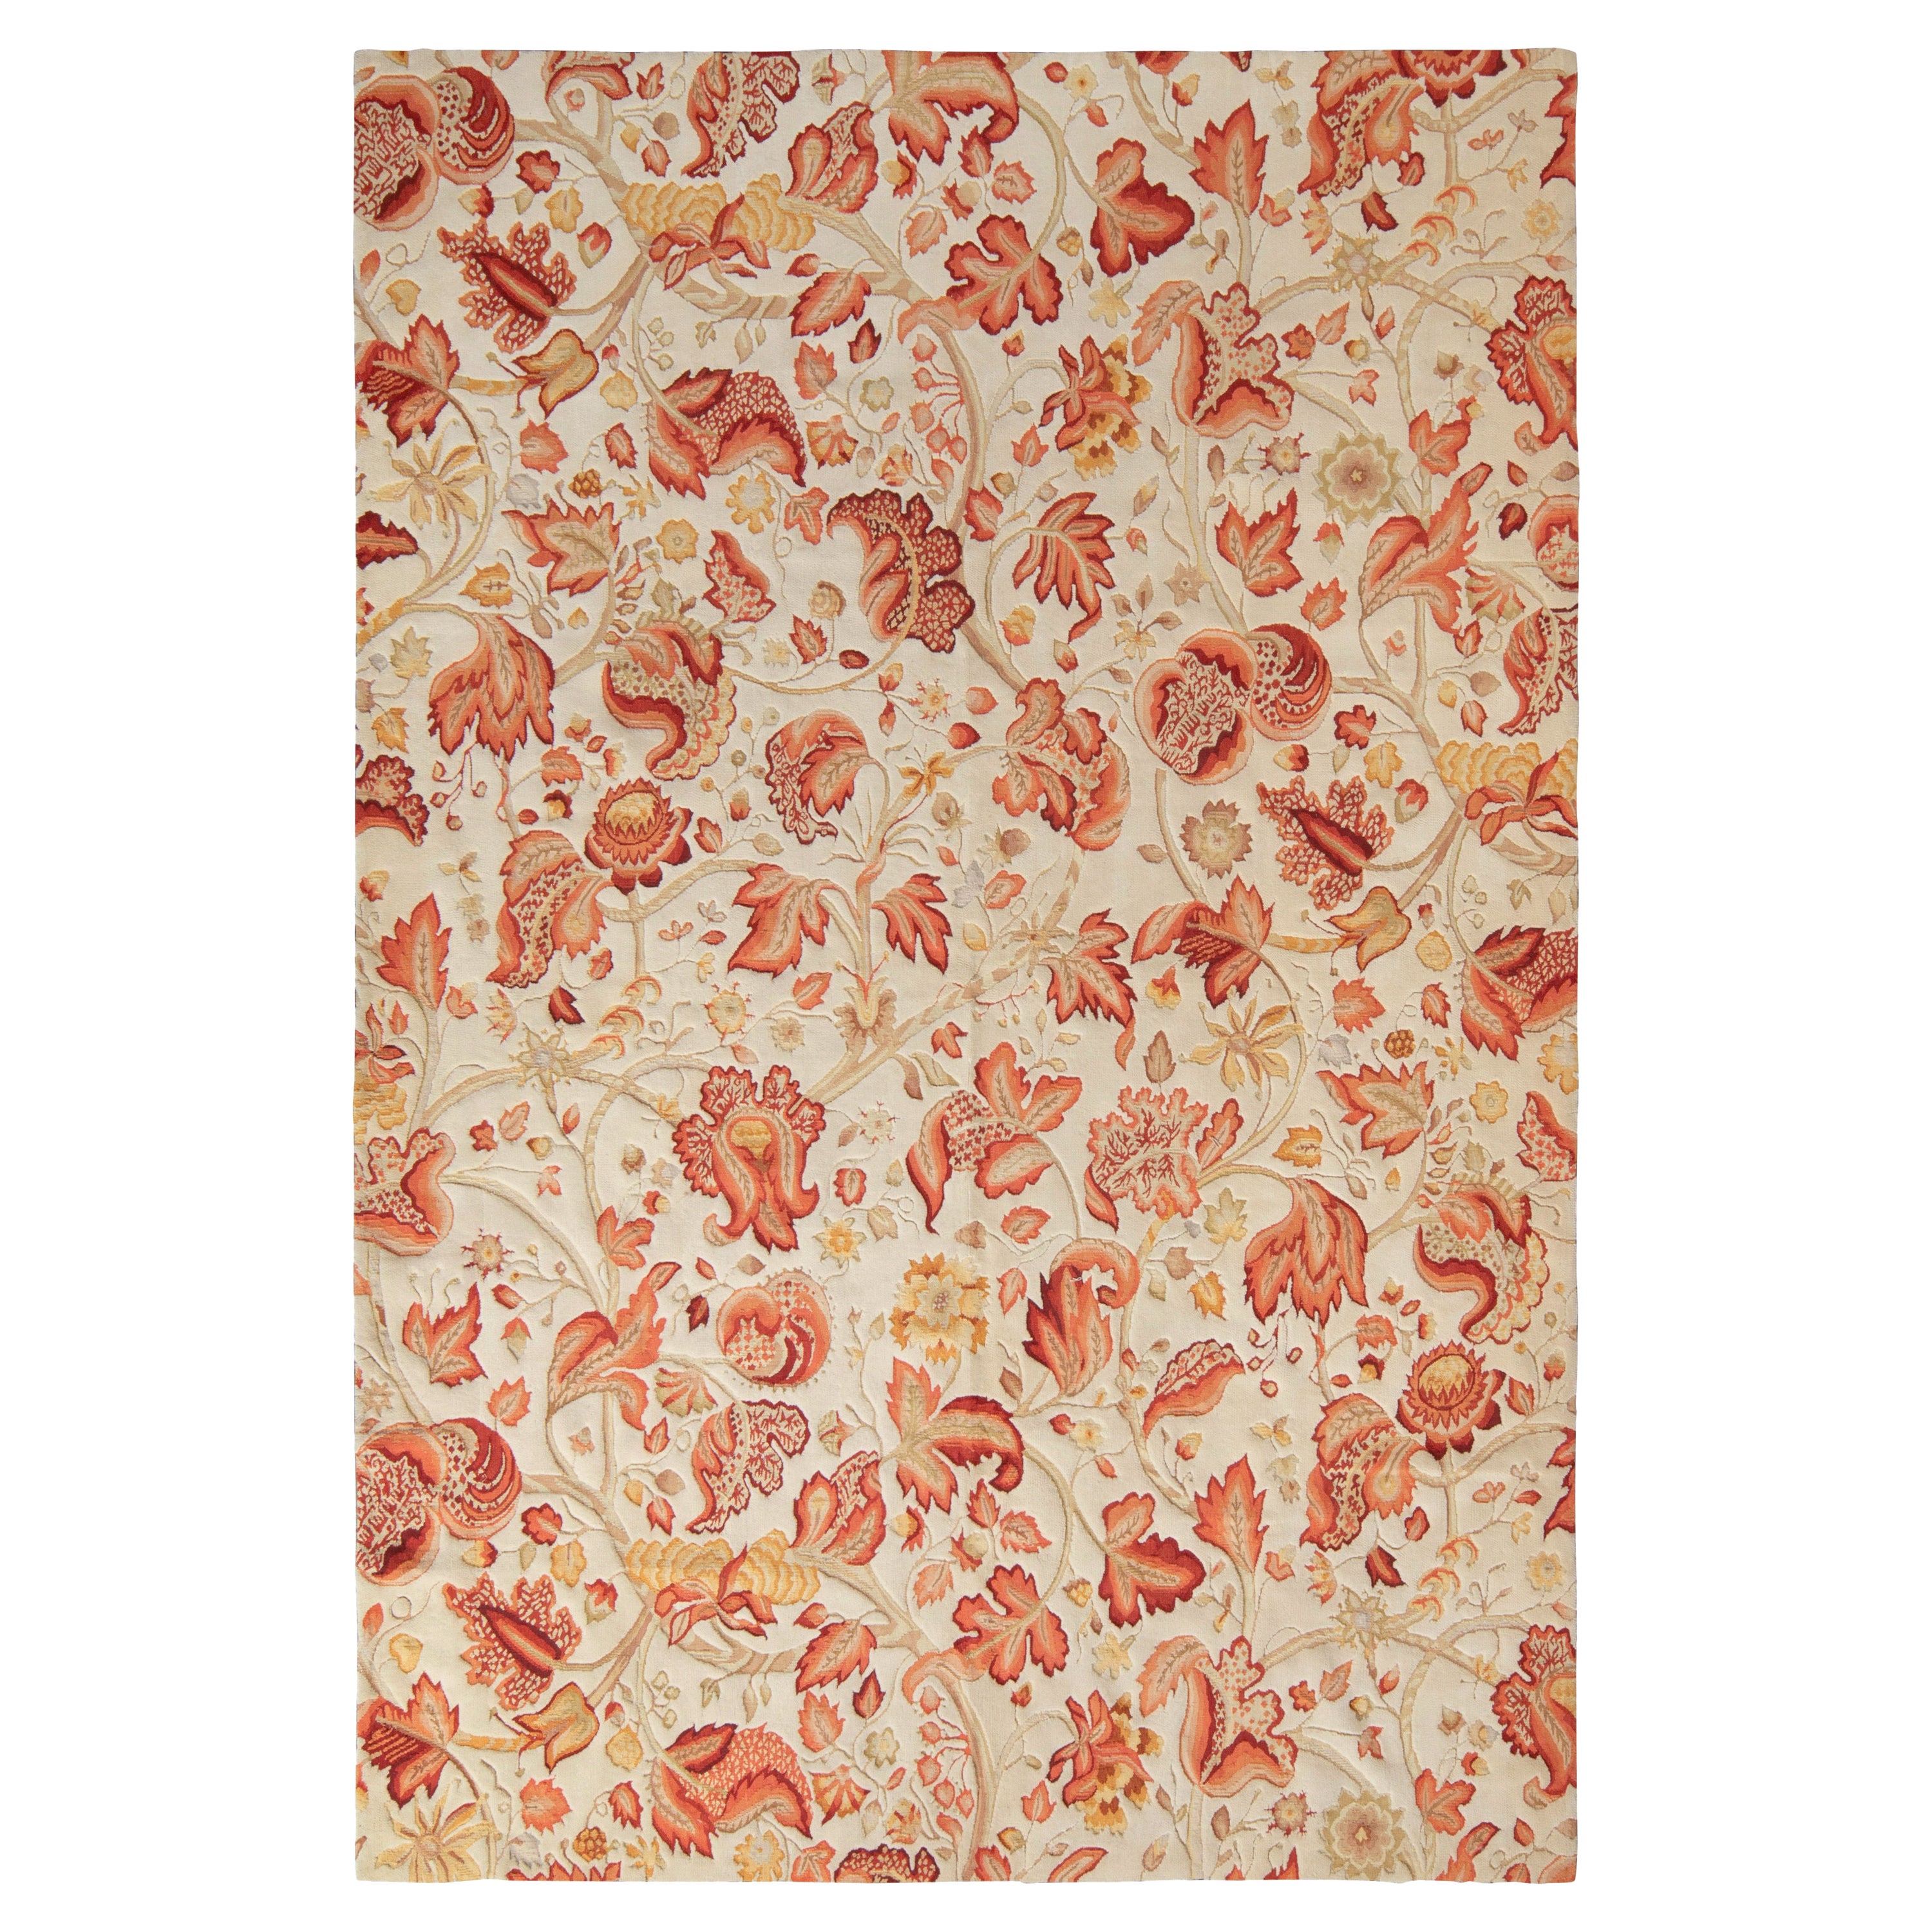 Teppich & Kilims Tudor-Stil in Beige, Rot & Weiß mit Blumenmuster